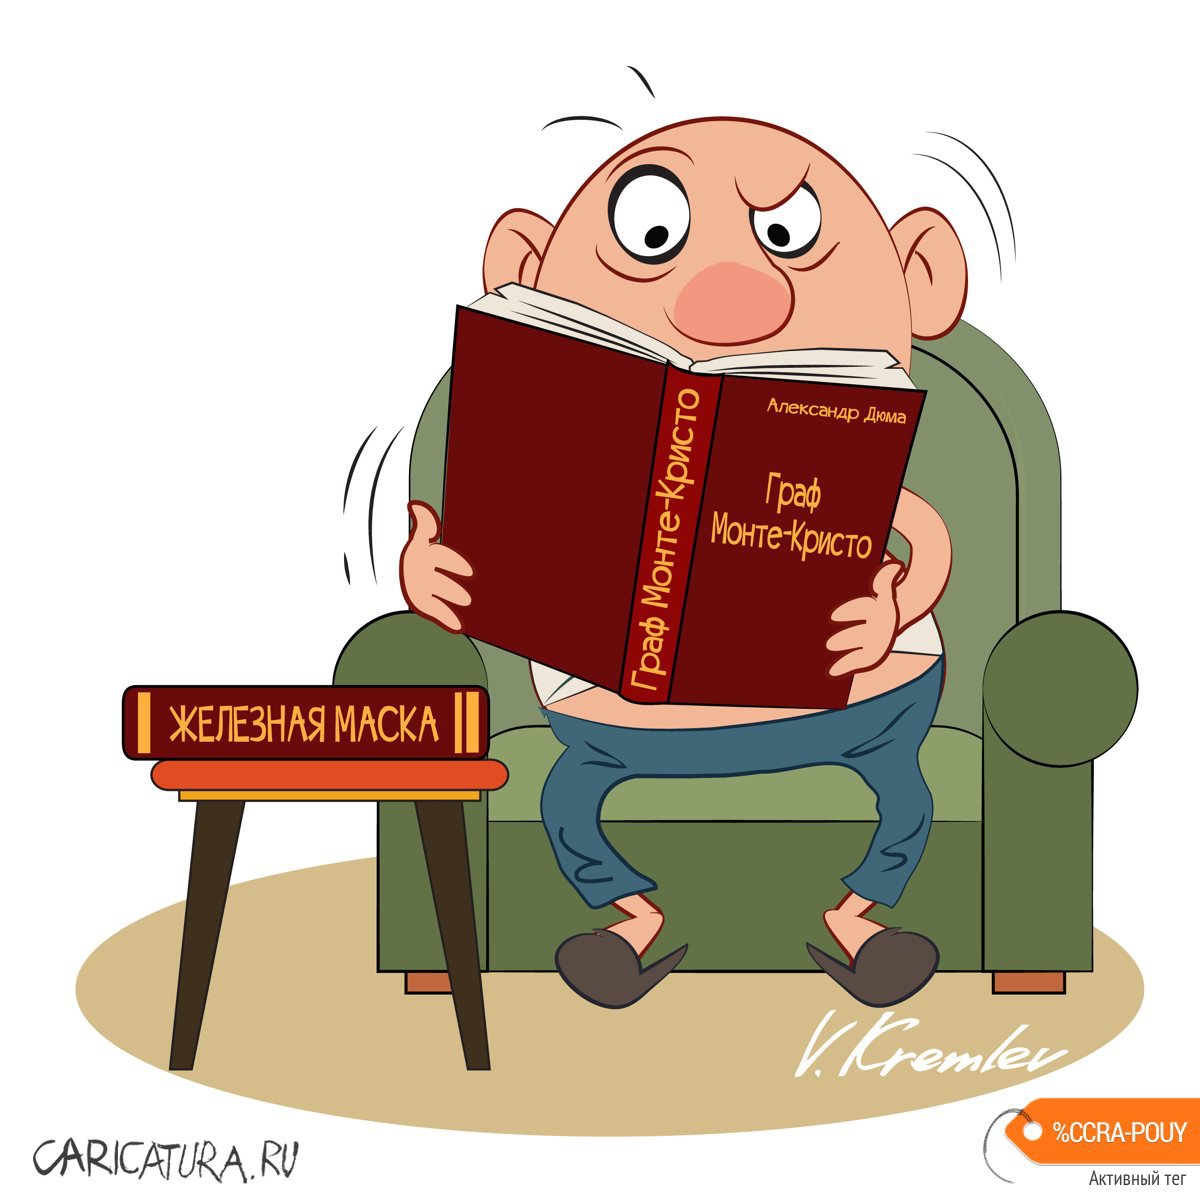 Карикатура "Жёсткий караЧтин", Владимир Кремлёв